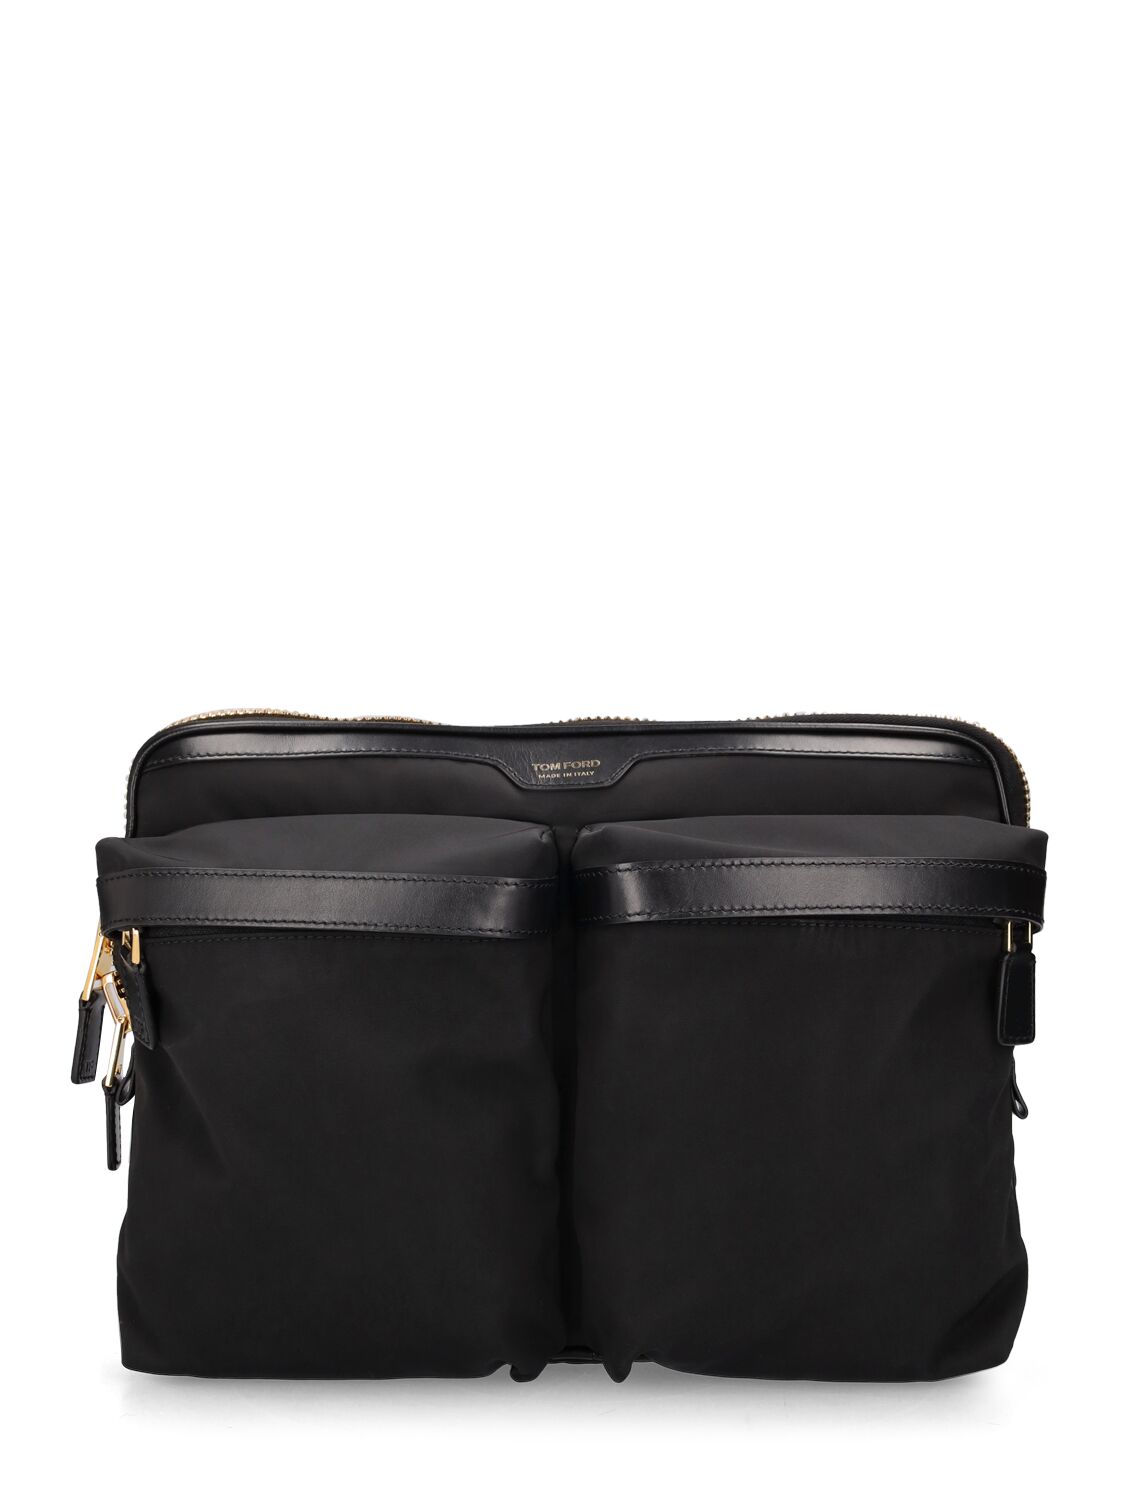 Tom Ford Large Leather-trimmed Nylon Messenger Bag In Black